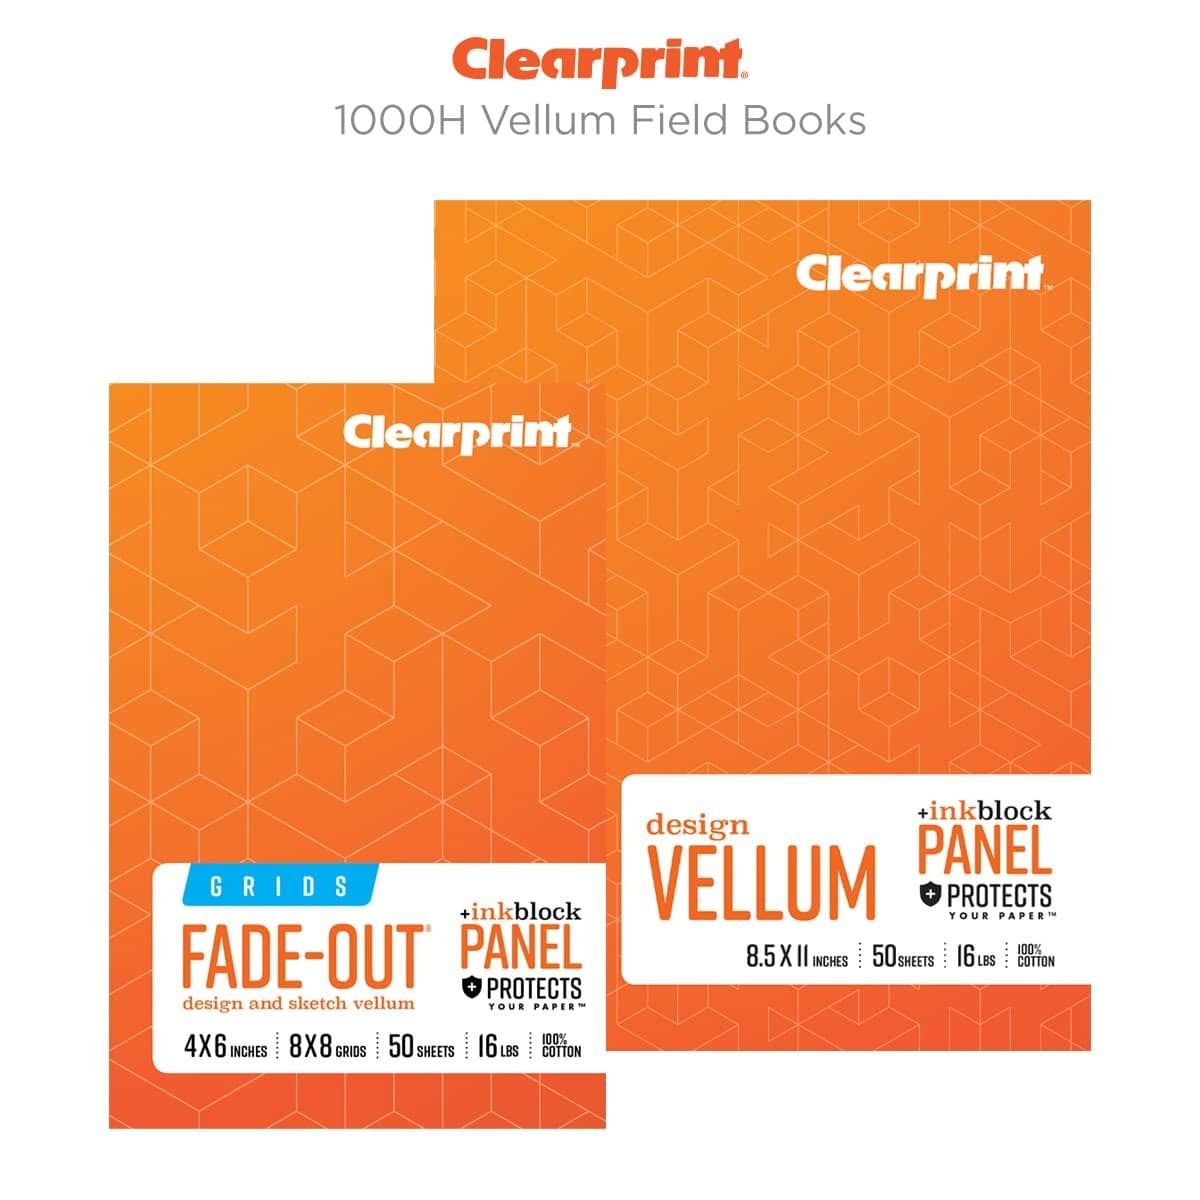 Clearprint 1000H Vellum Field Books